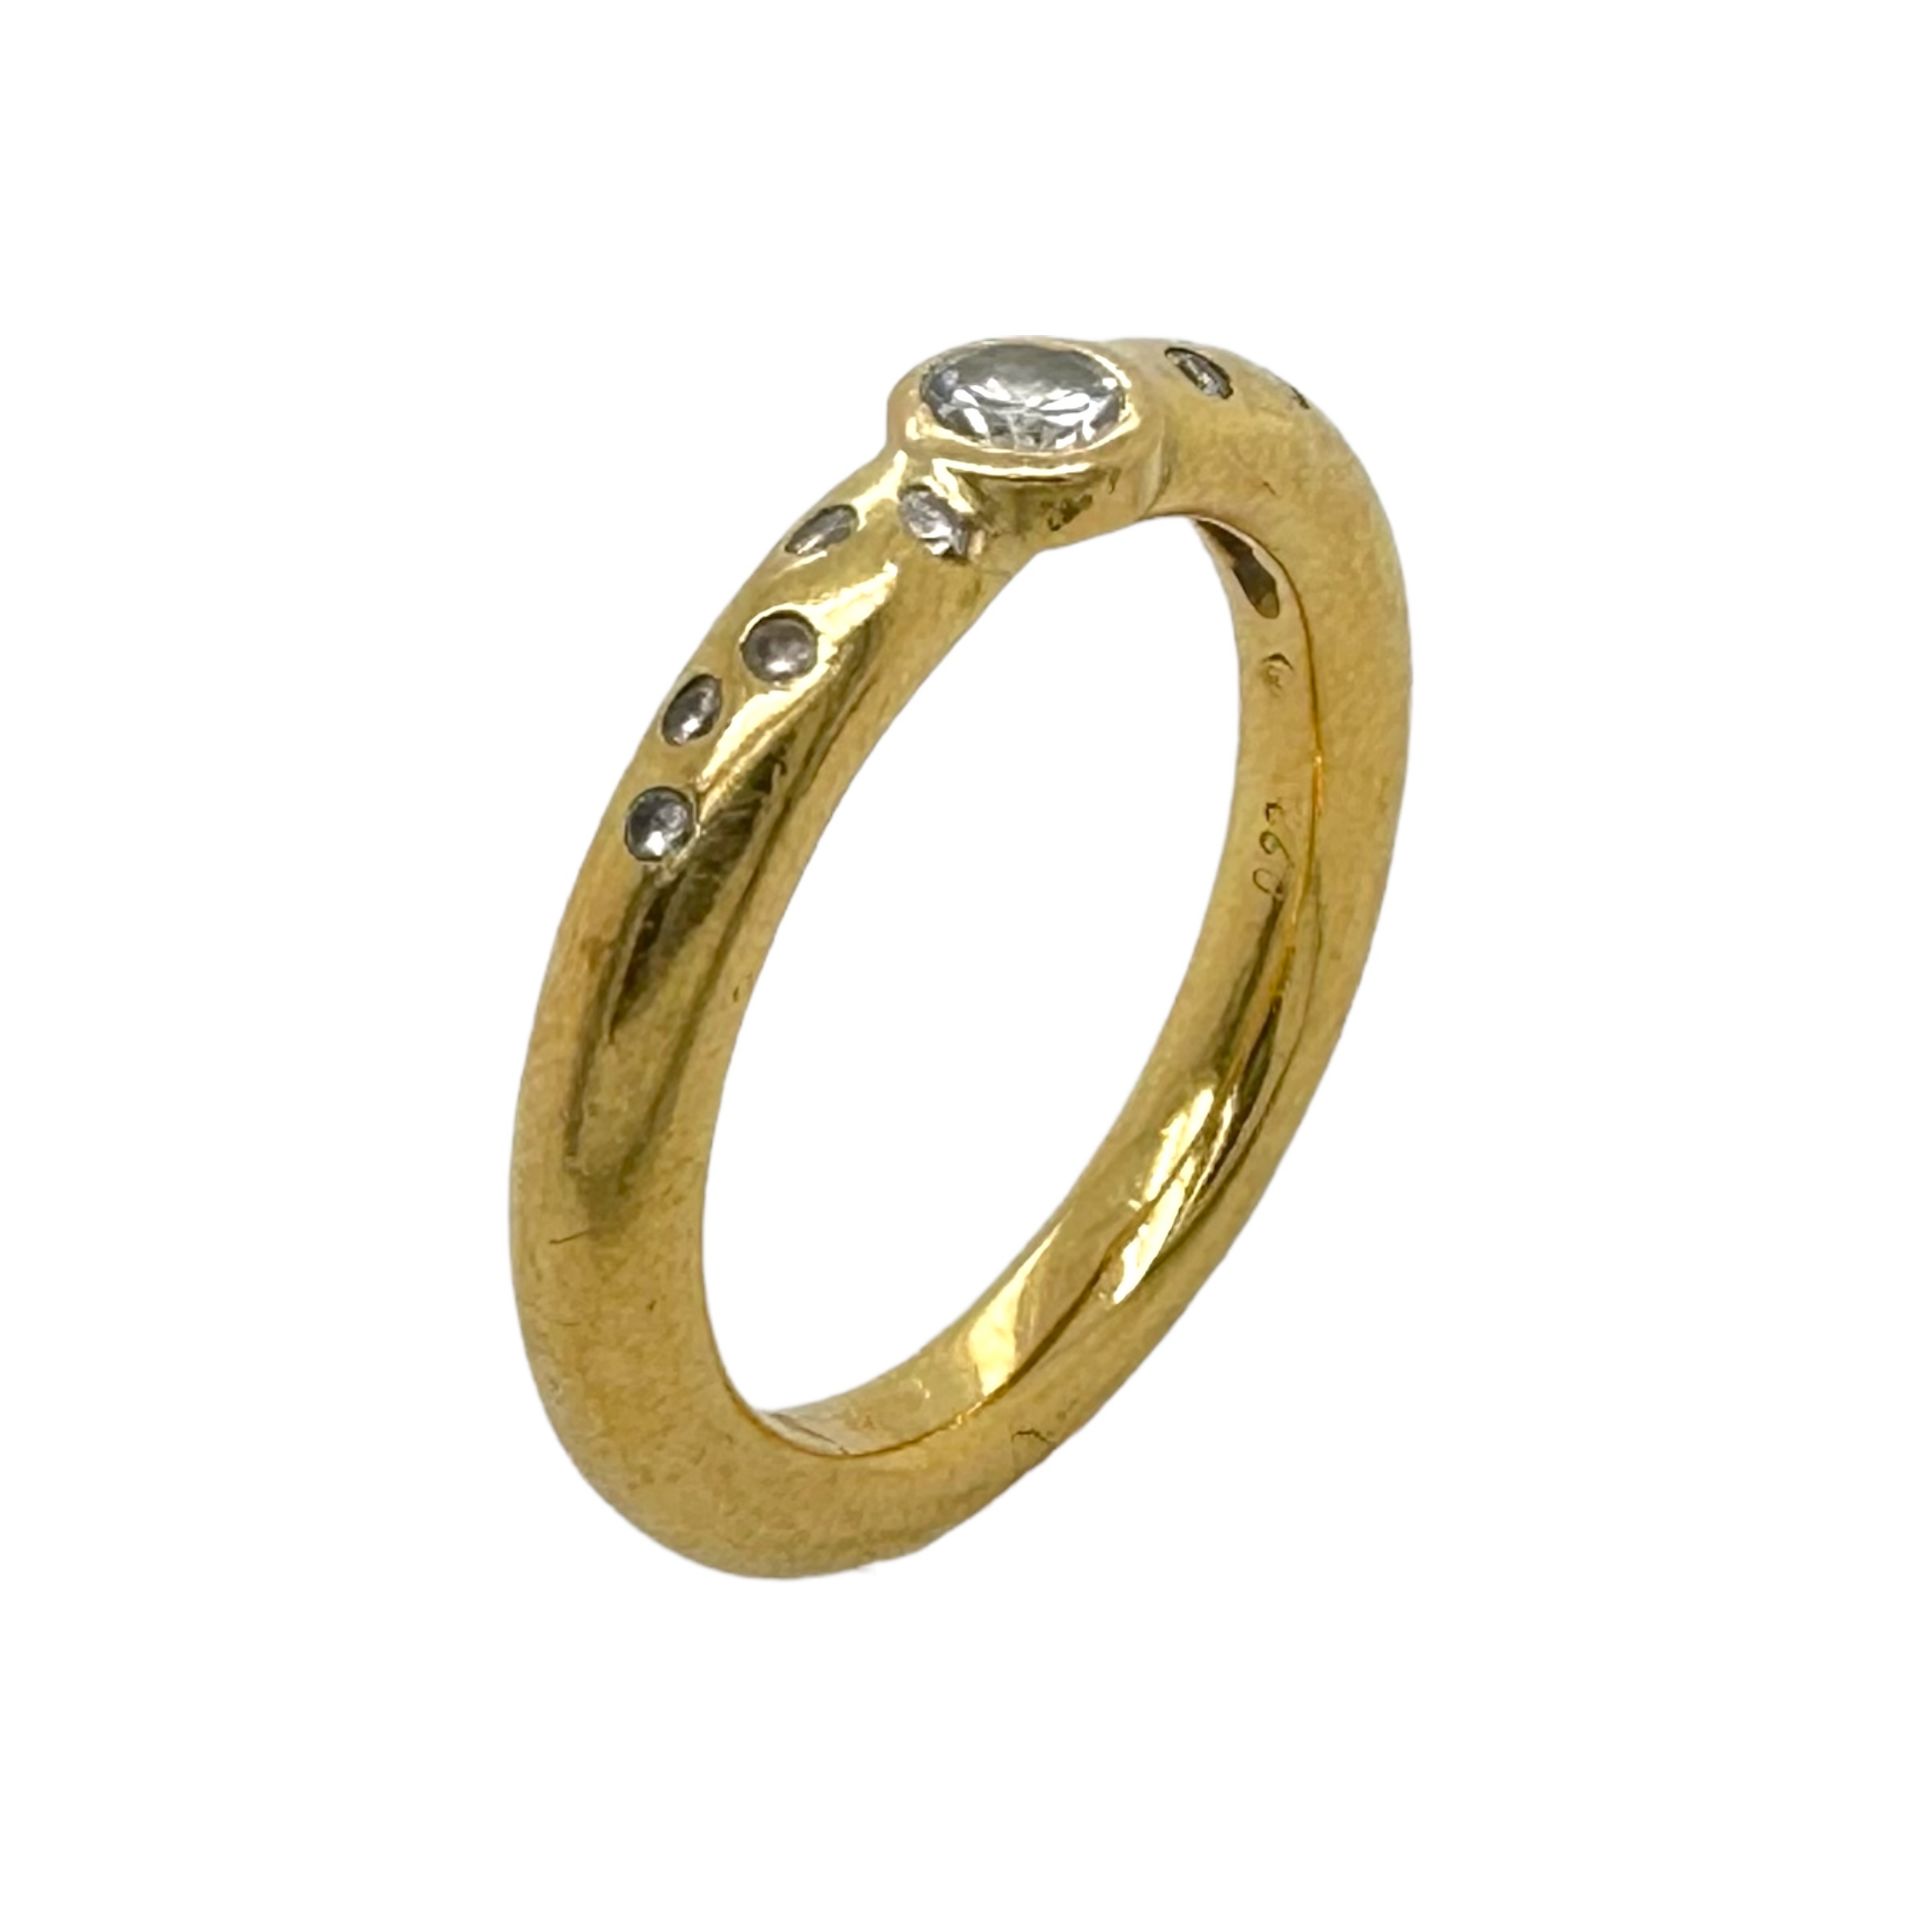 Ring 6,37g 750/- Gelbgold mit Diamant ca. 0,15 ct. und 10 Diamanten zus. ca. 0,10 ct., Ringgroesse .